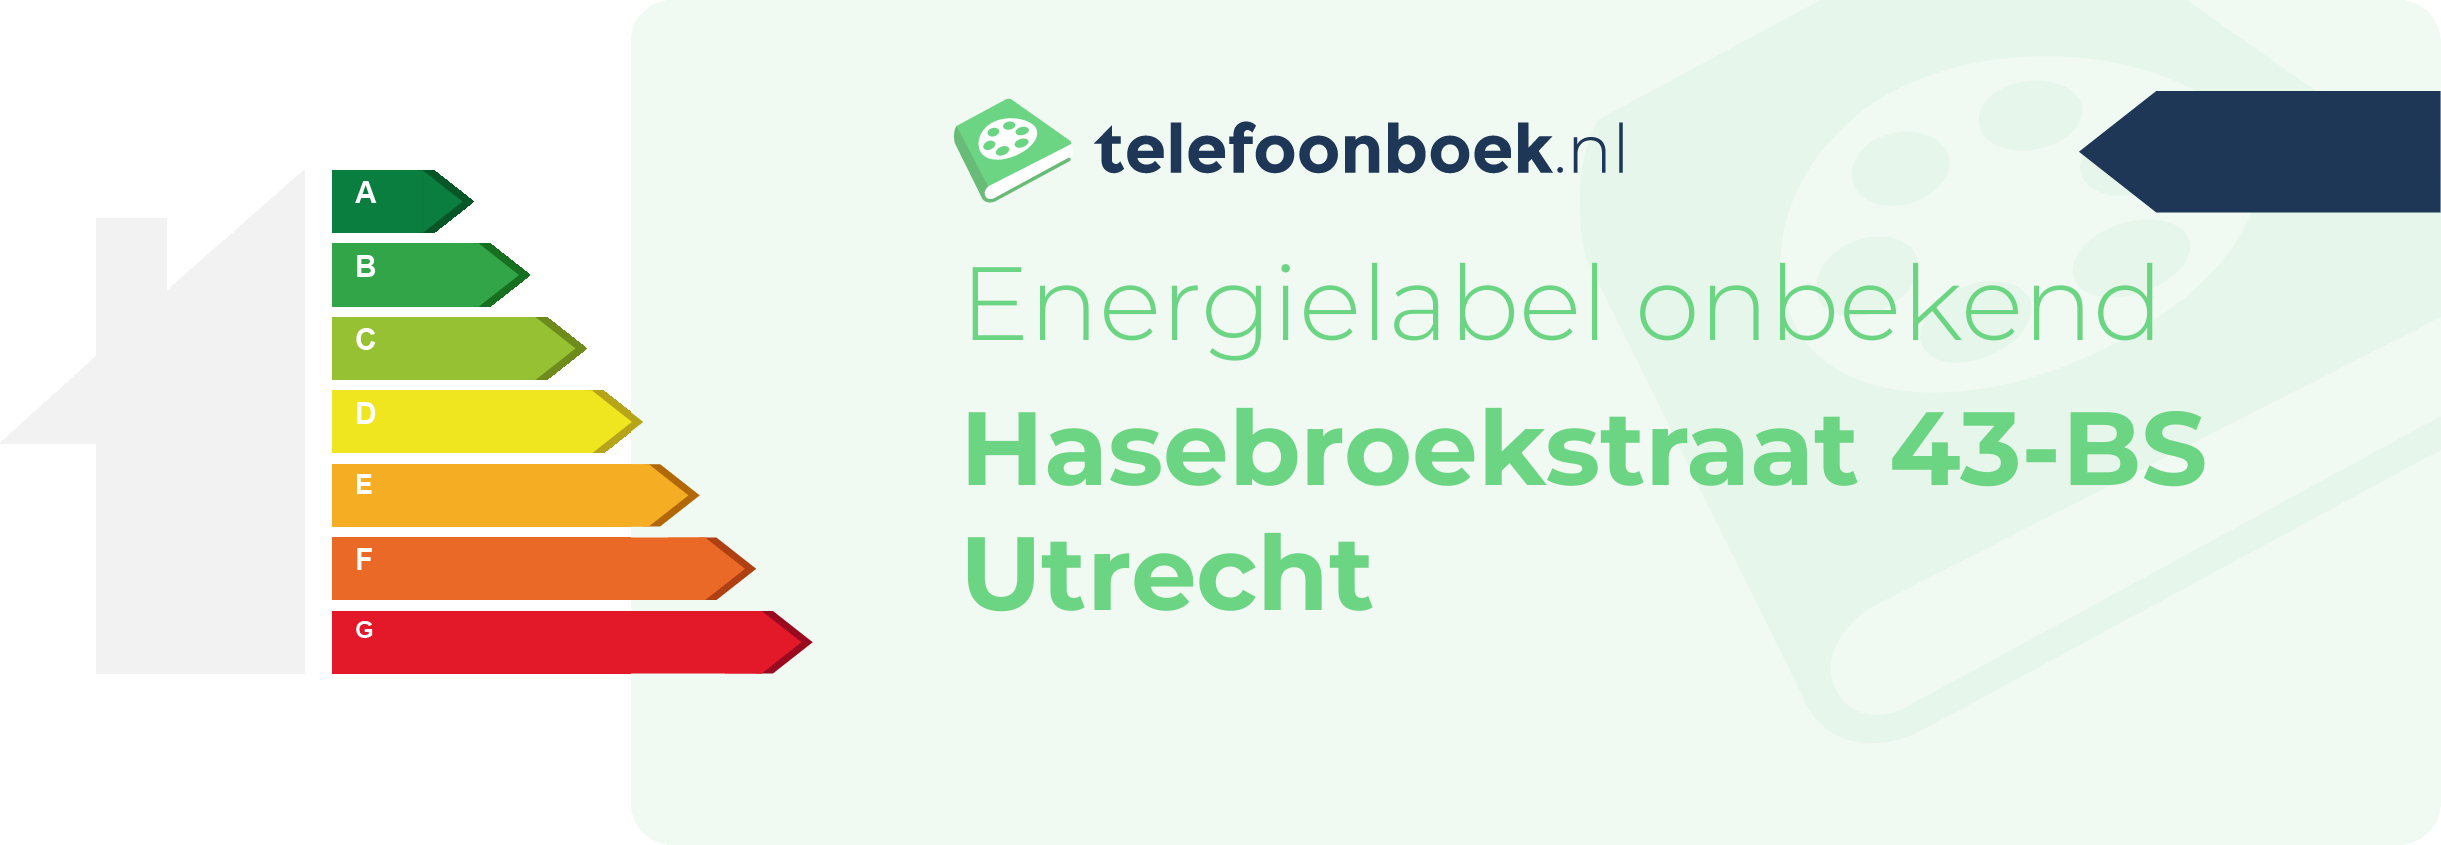 Energielabel Hasebroekstraat 43-BS Utrecht